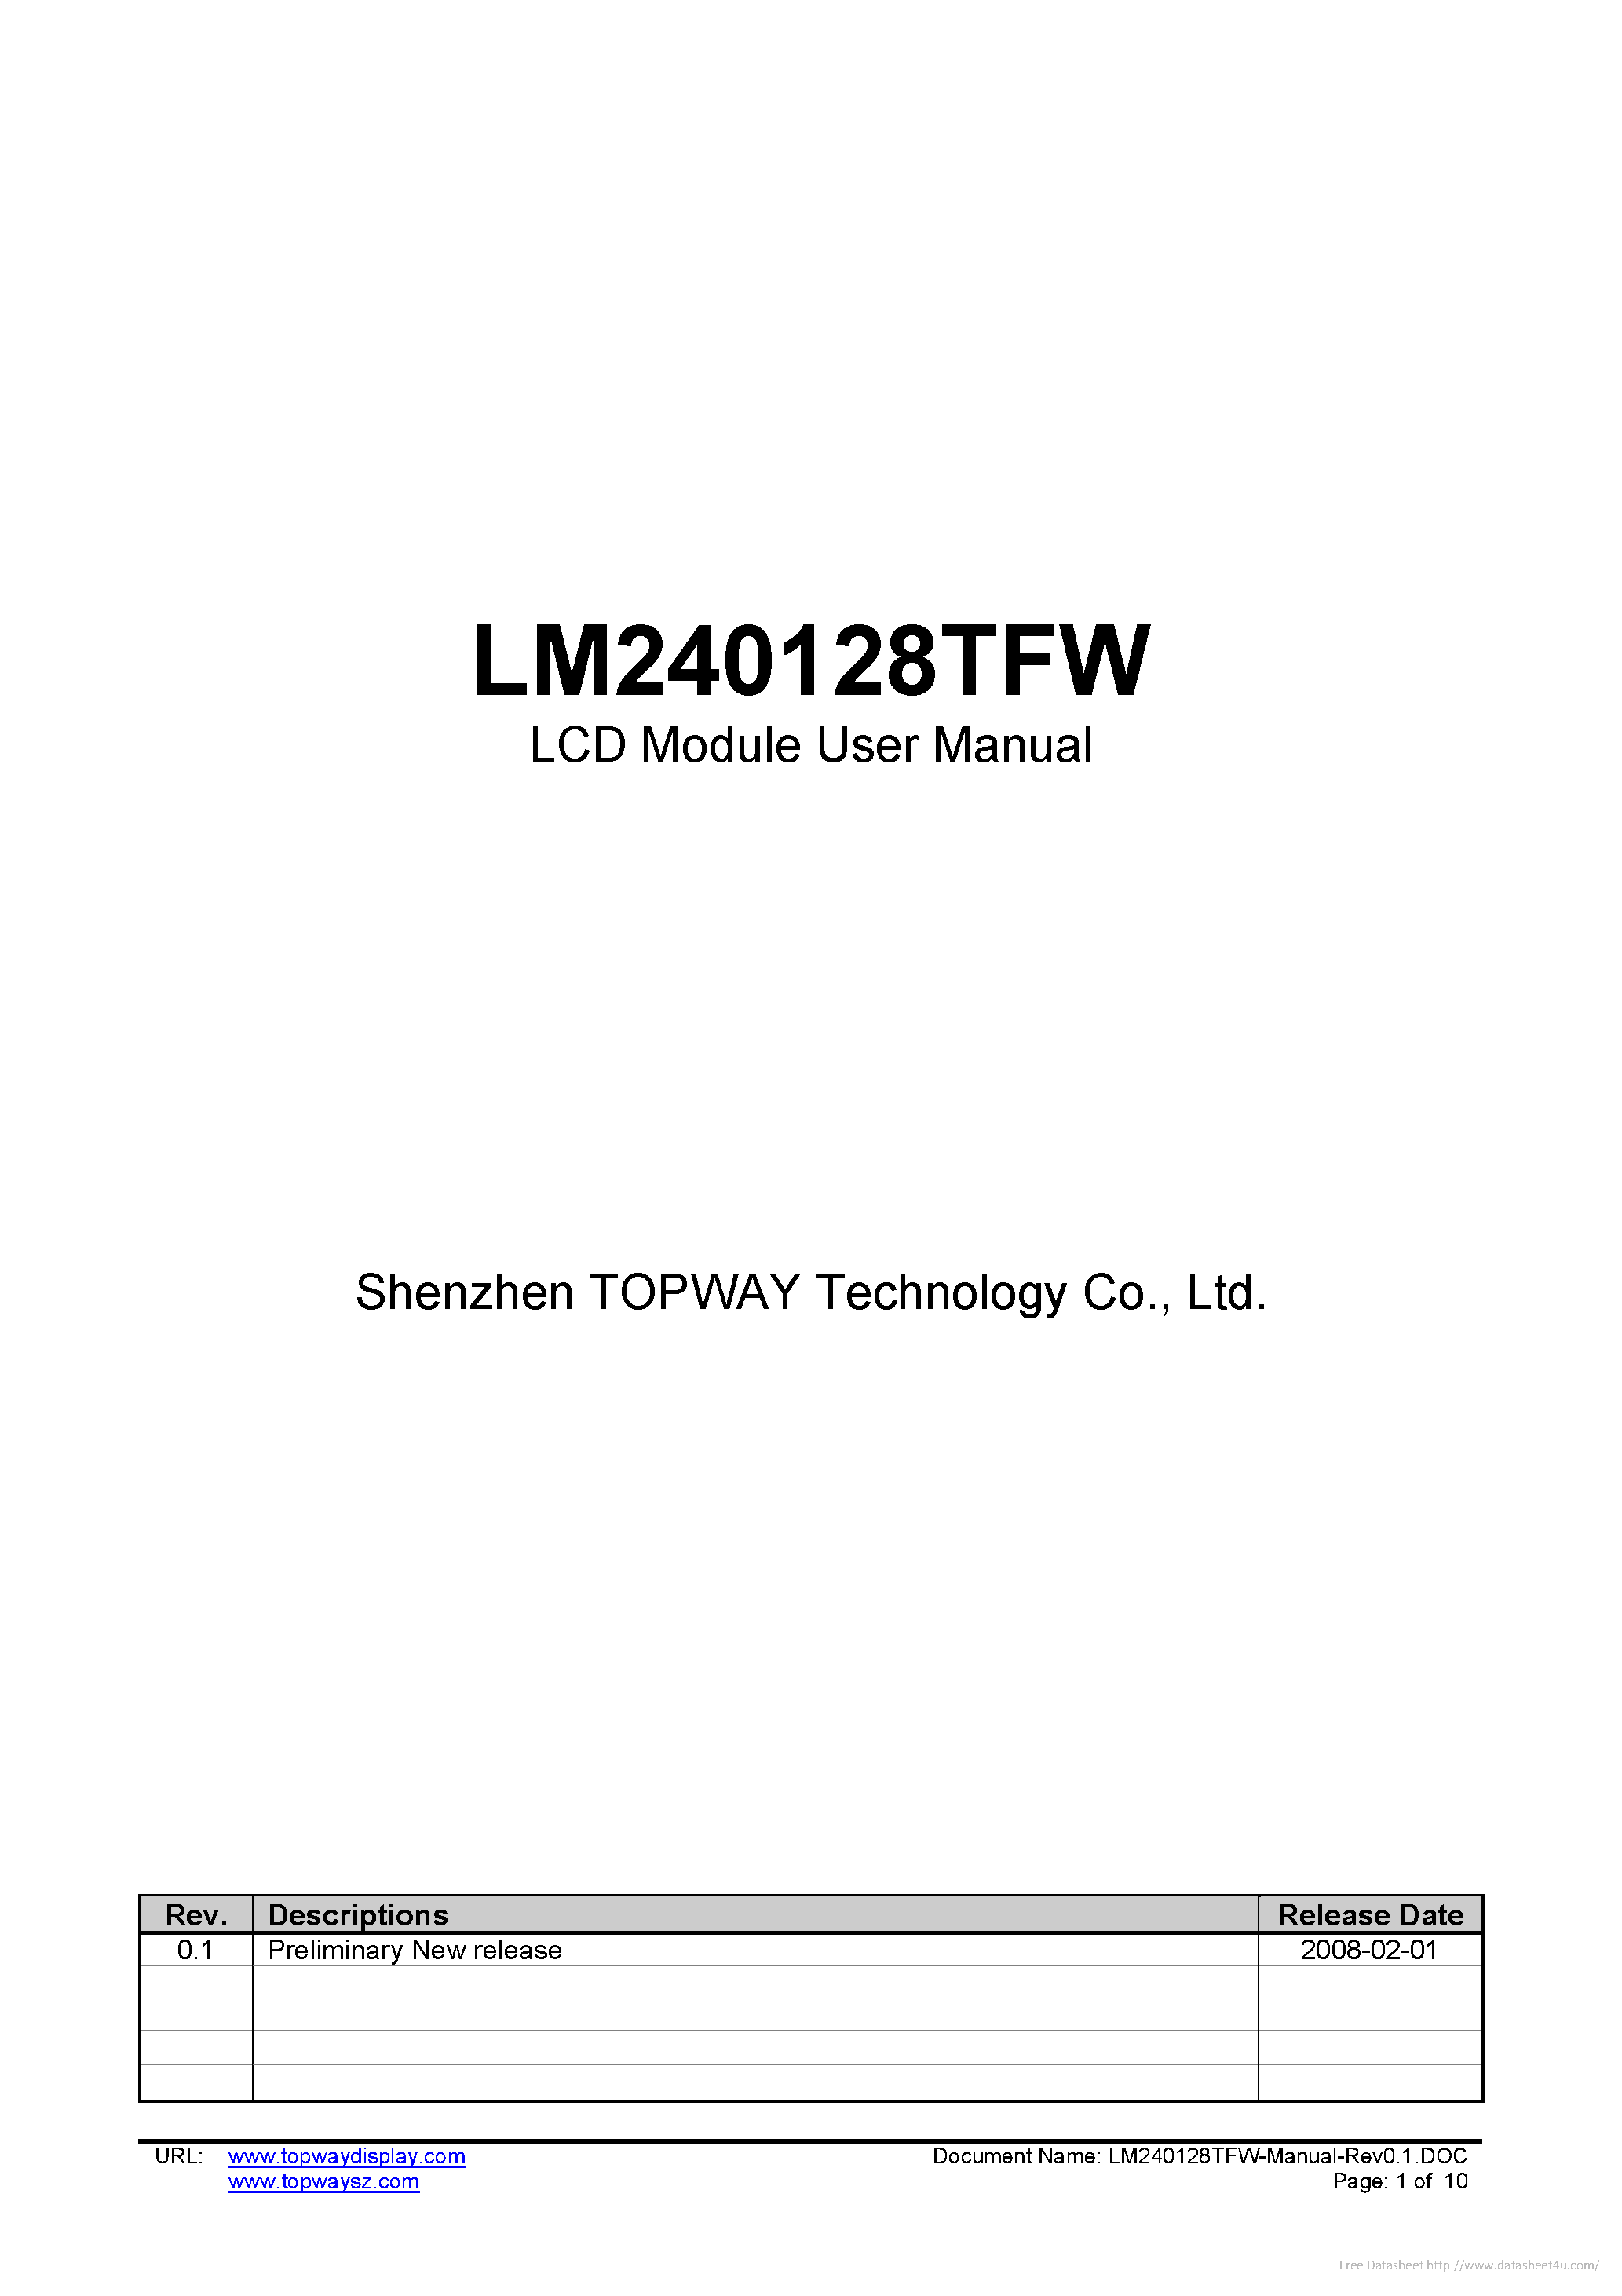 Даташит LM240128TFW - страница 1